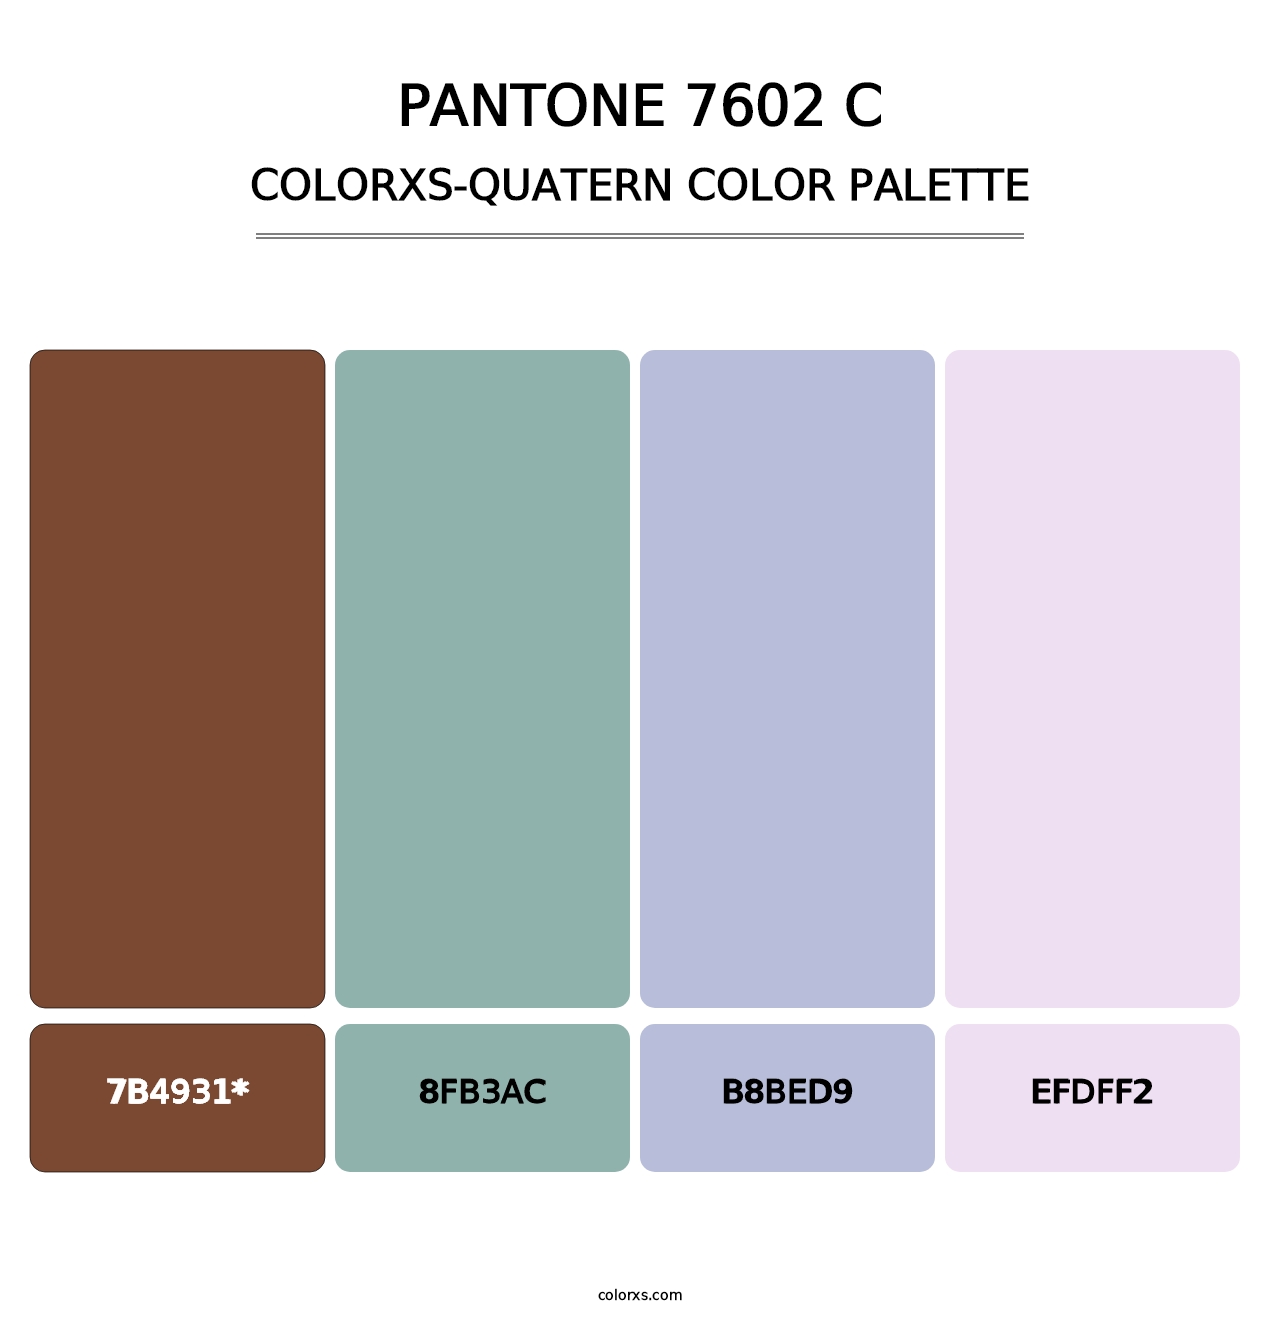 PANTONE 7602 C - Colorxs Quatern Palette